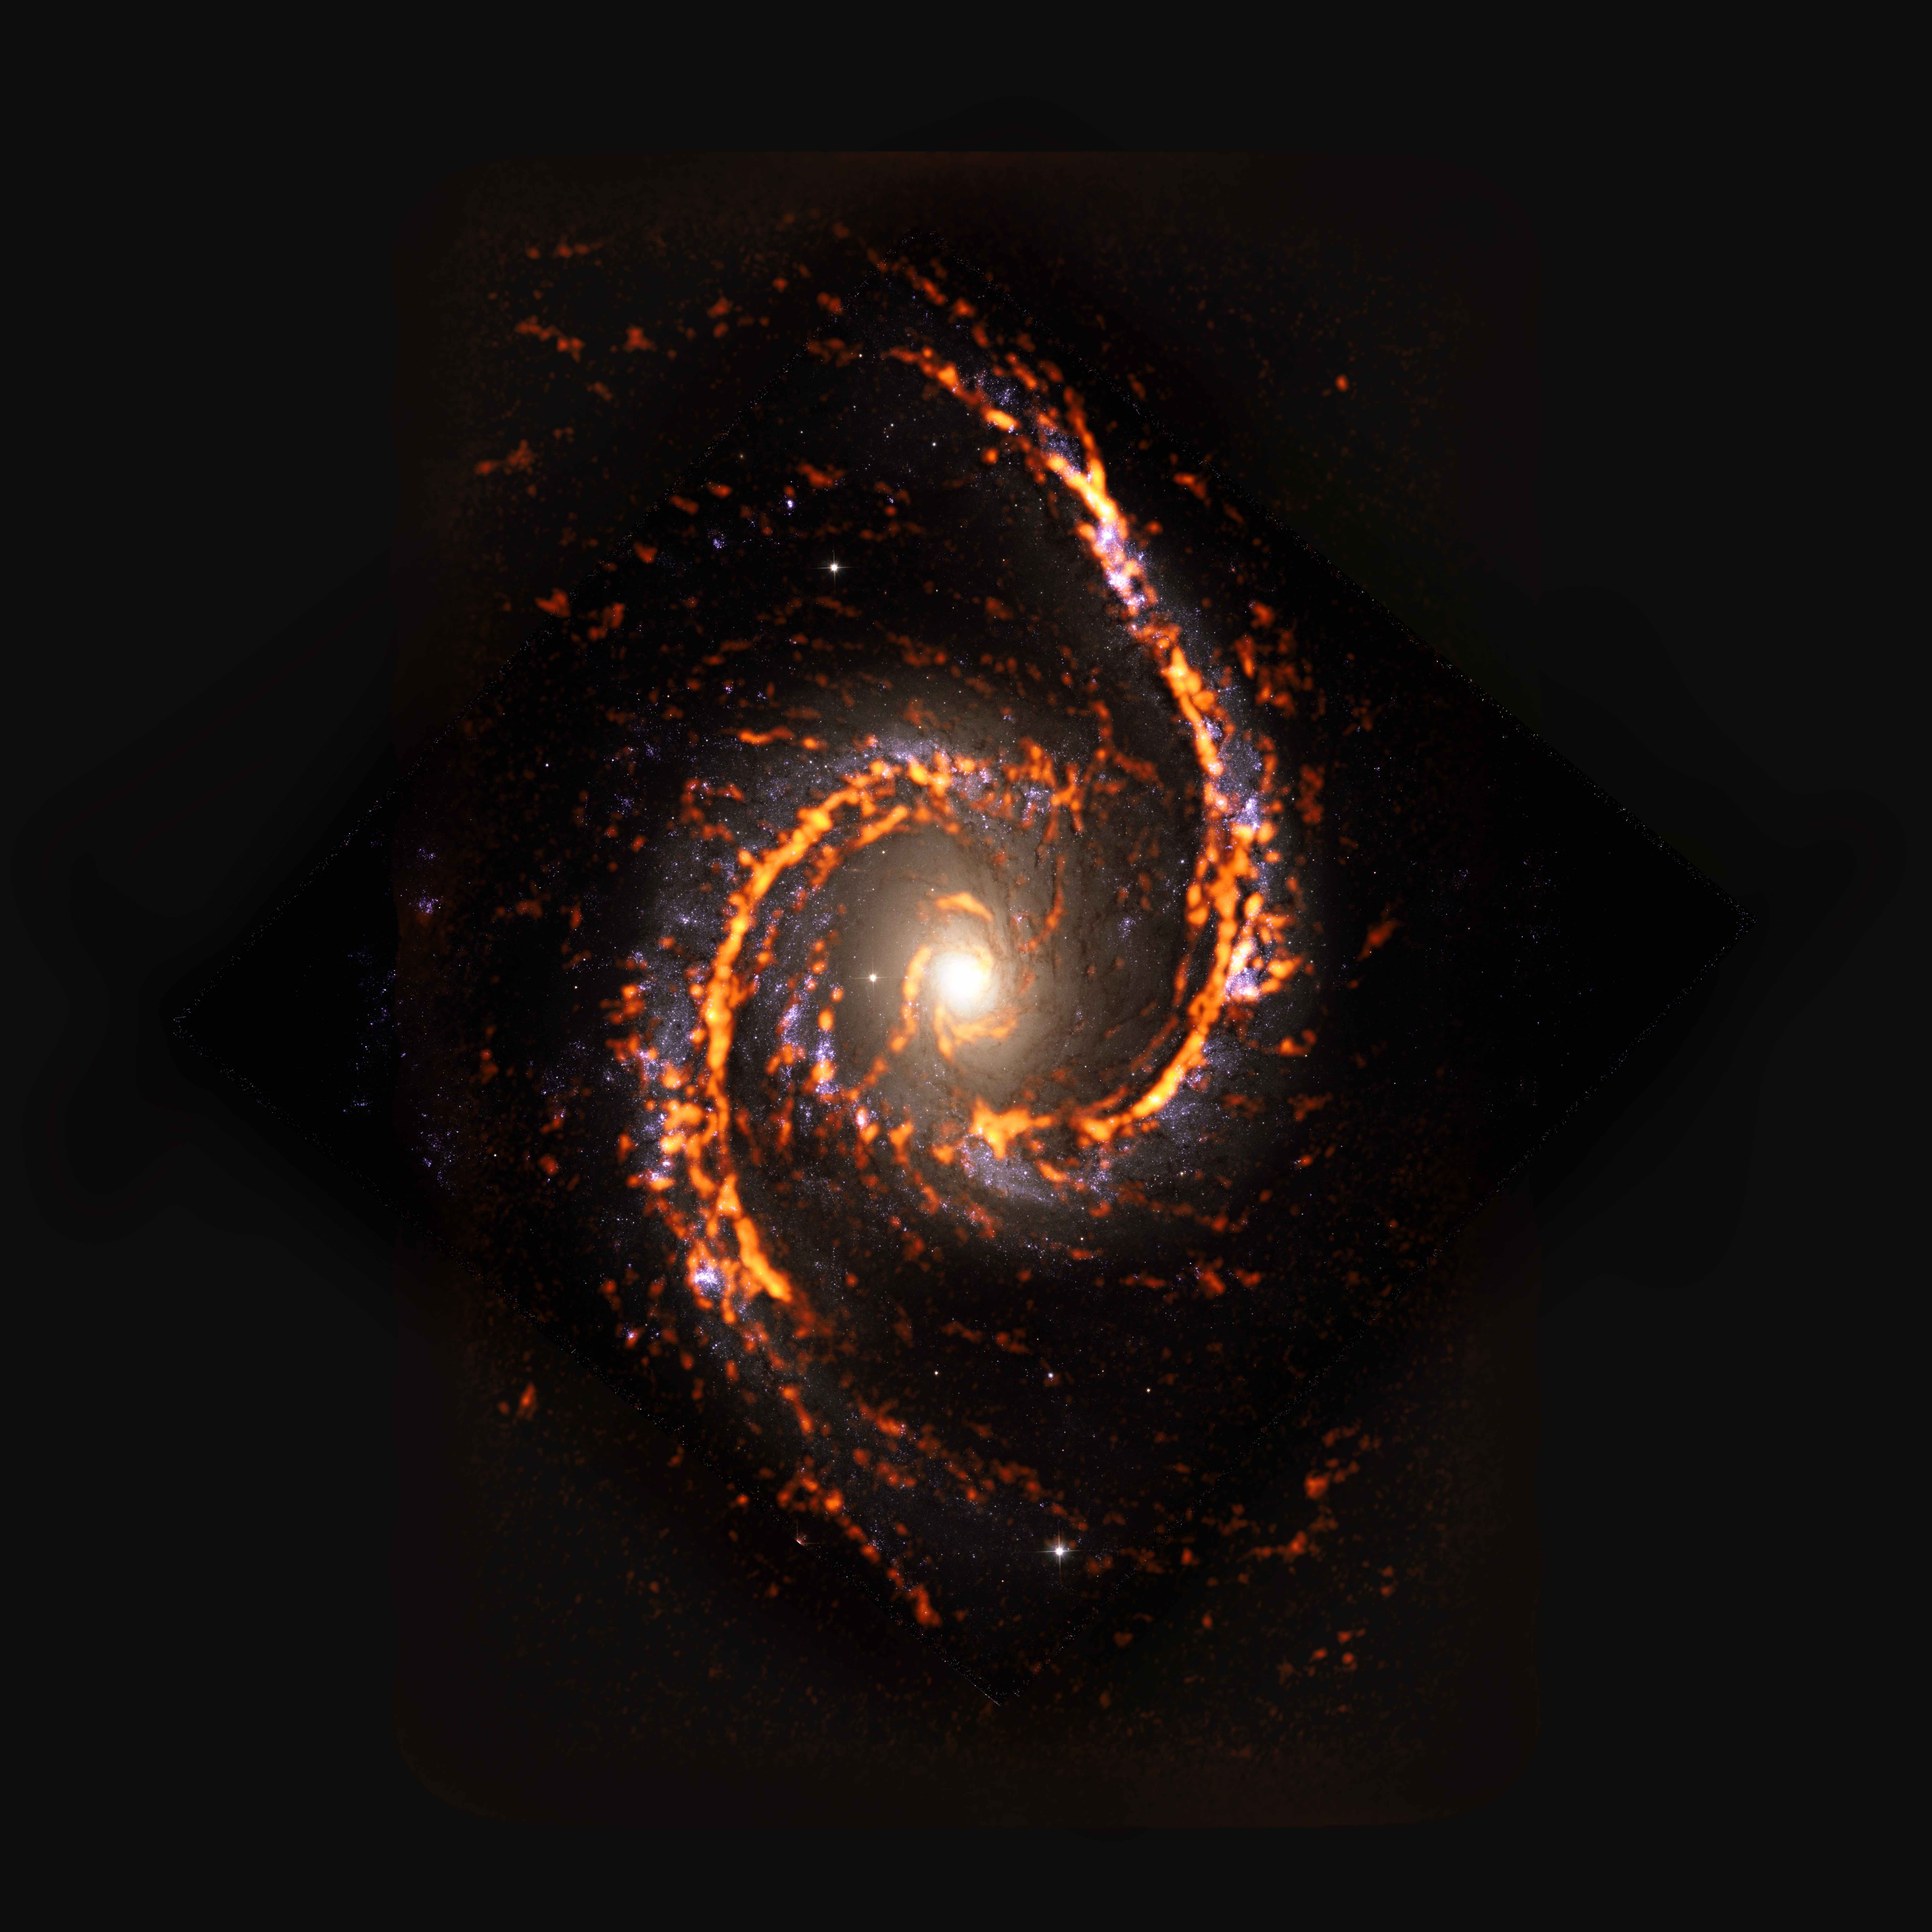 PHANGS-ALMA Survey: NGC1566